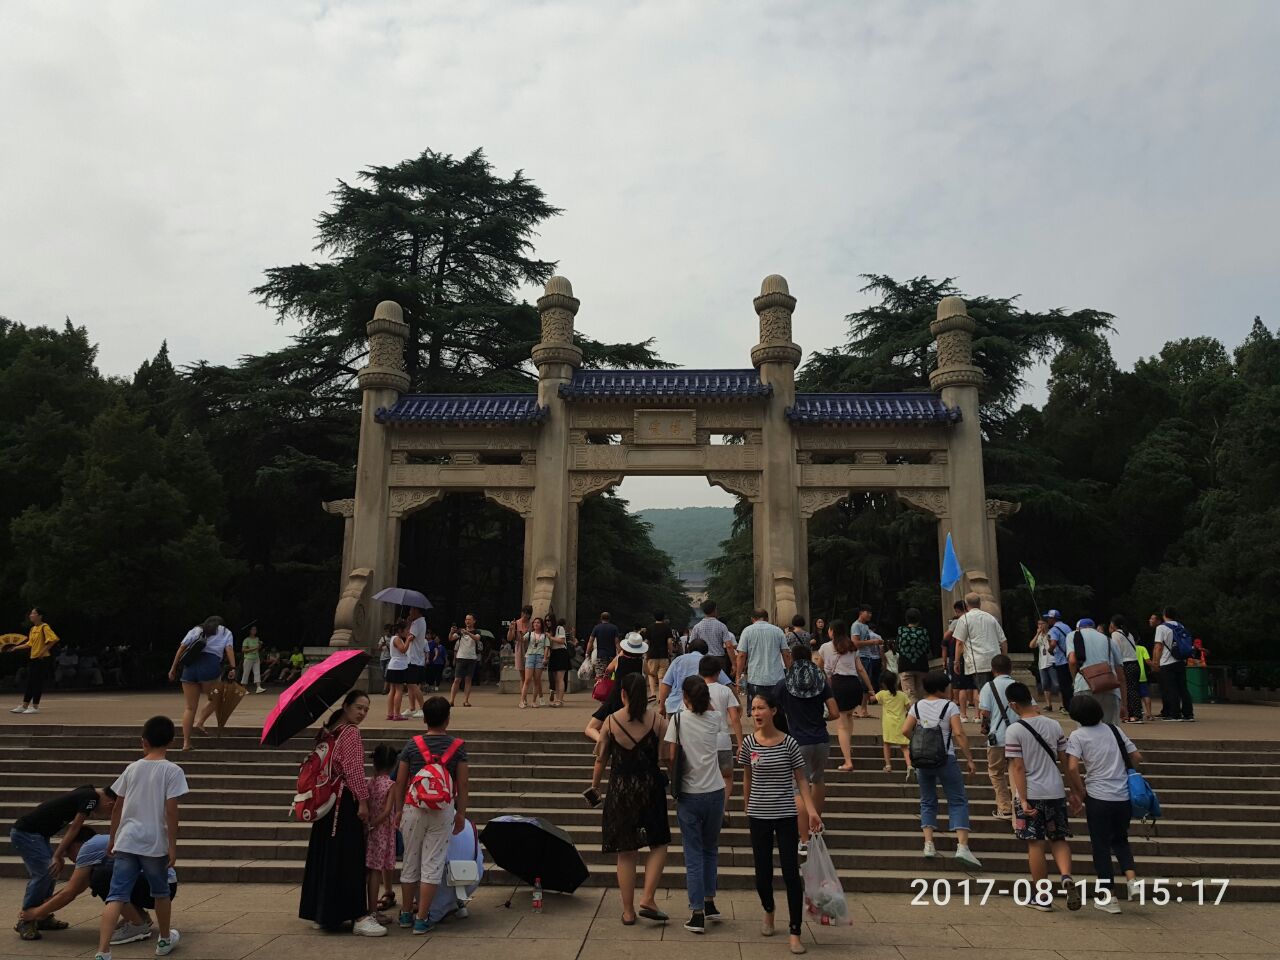 【携程攻略】南京中山陵景区景点,中山陵是到南京必来的地方，乘坐地铁转旅游专线非常方便。周一例行维…